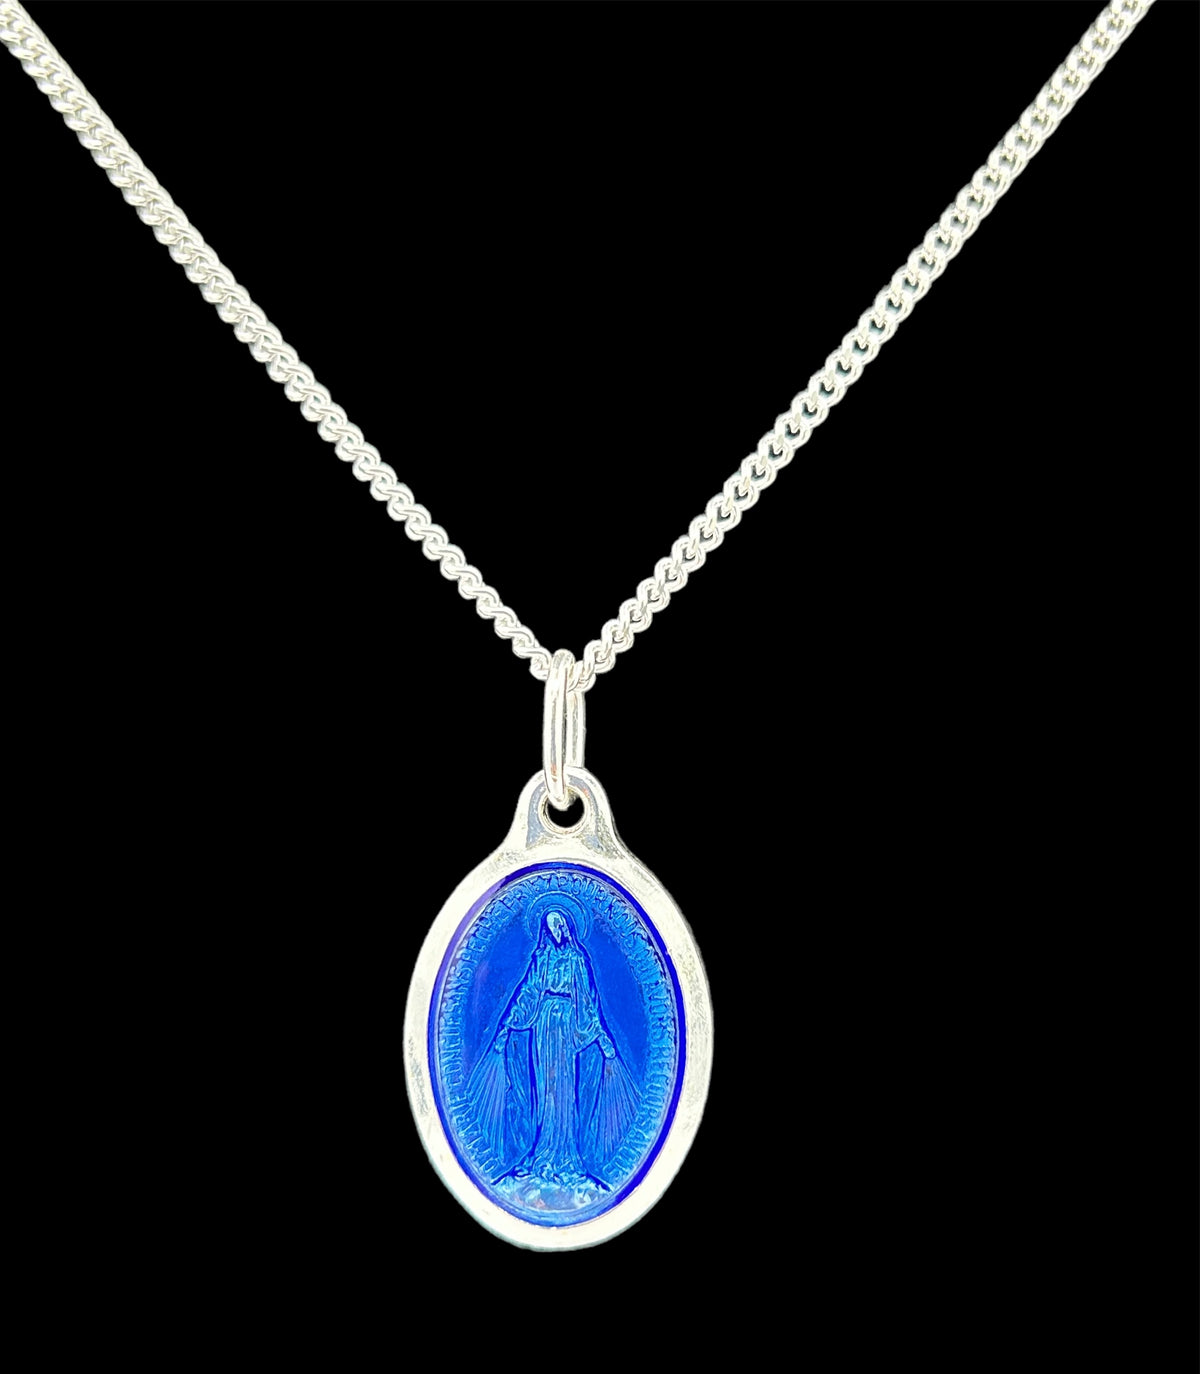 Parure composée d'une médaille de la Vierge miraculeuse ovale argentée 20 mm et d'une chaîne 50 cm, entièrement produite à Lourdes.